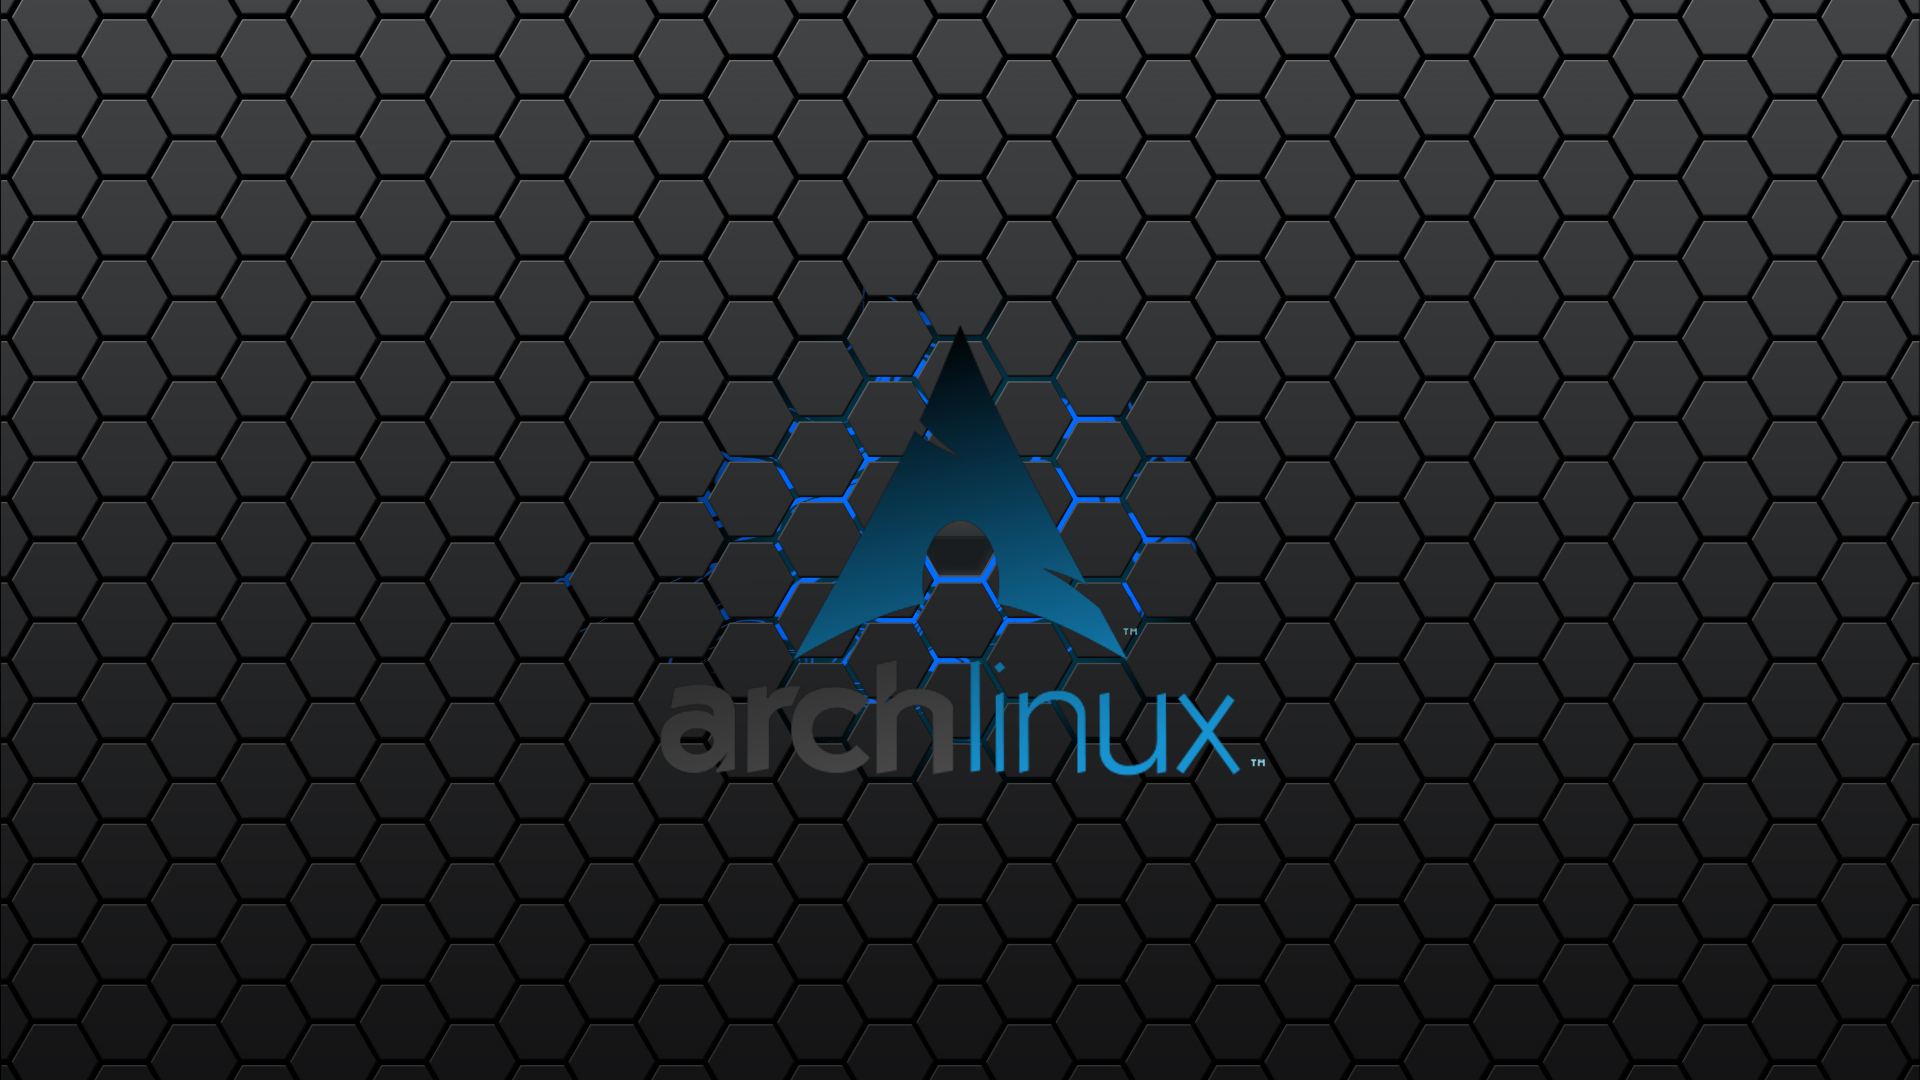 Hd Arch Linux Wallpaper Pixelstalknet